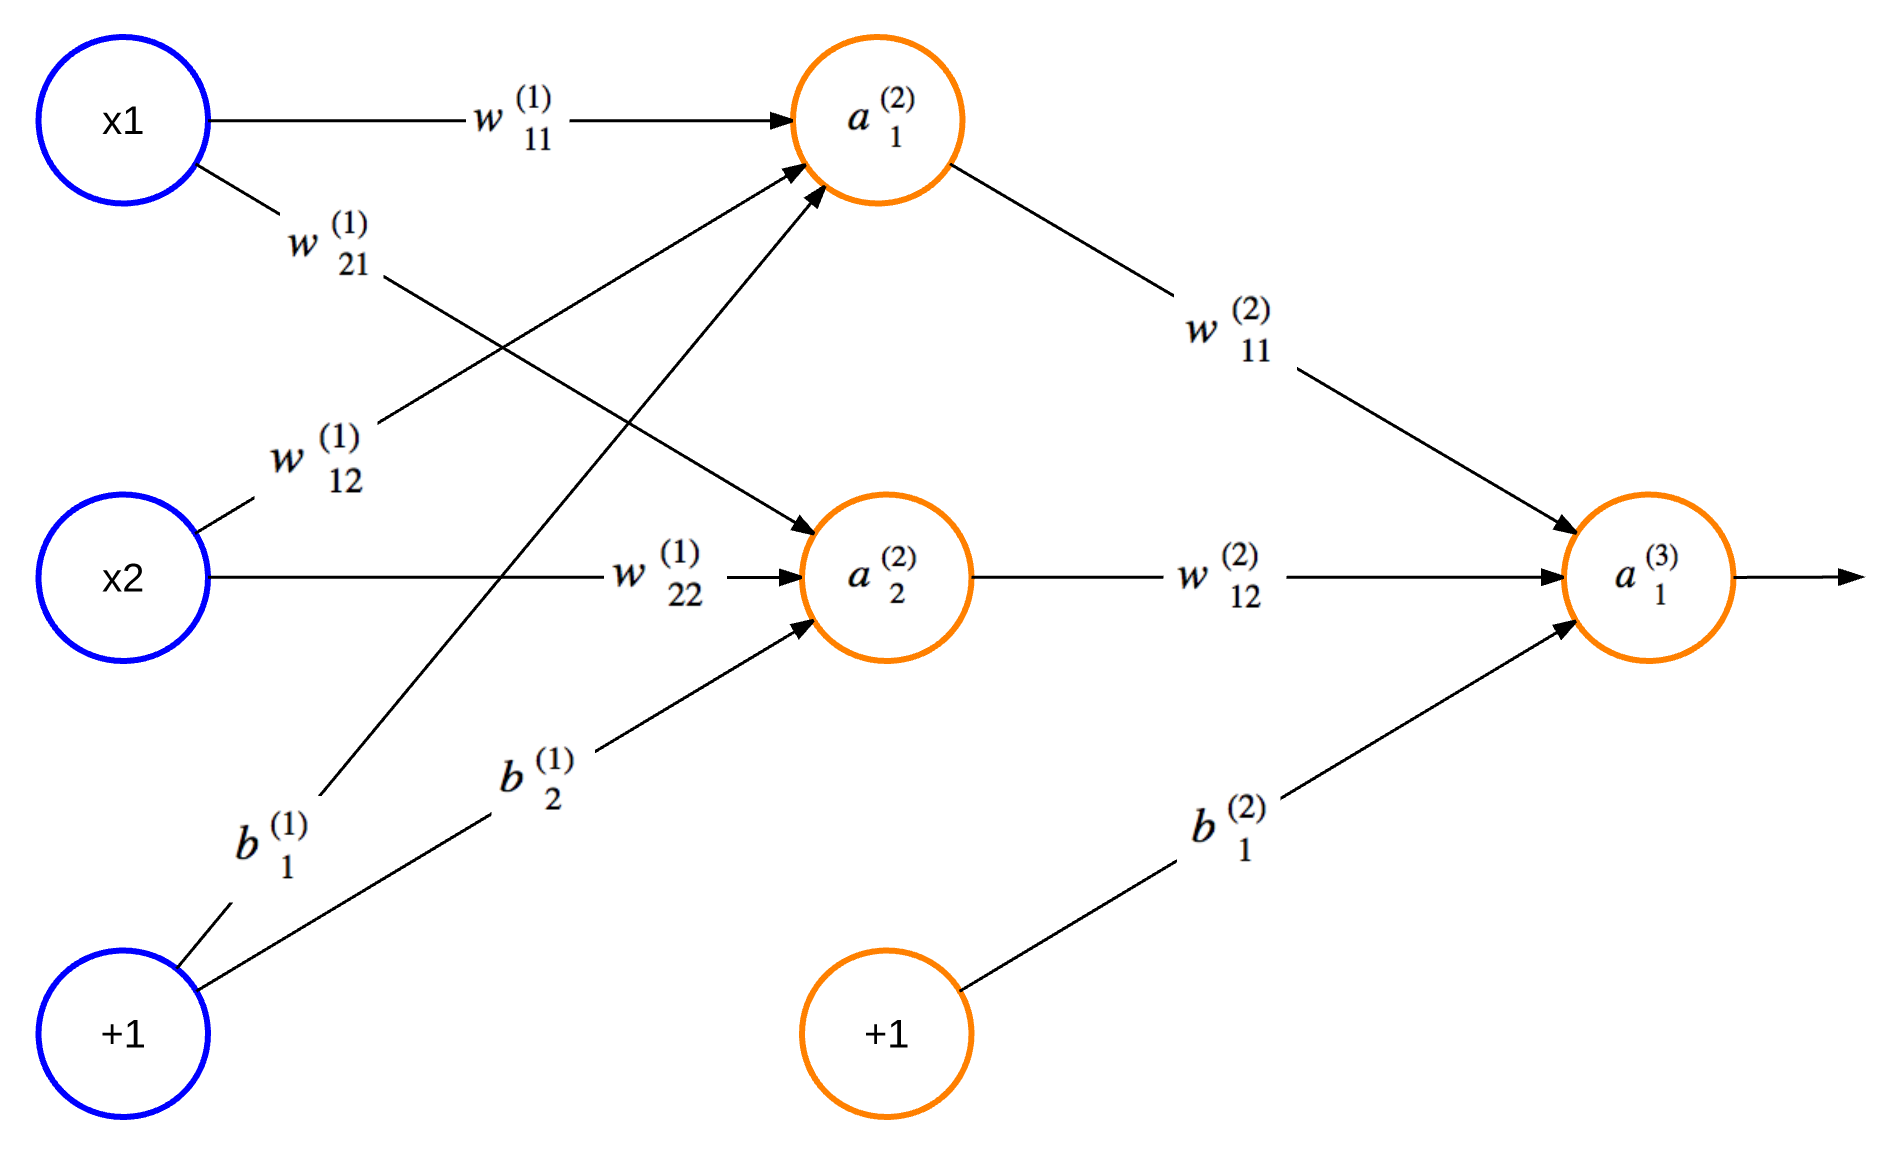 Figure 15.1 - An Artificial Neural Network